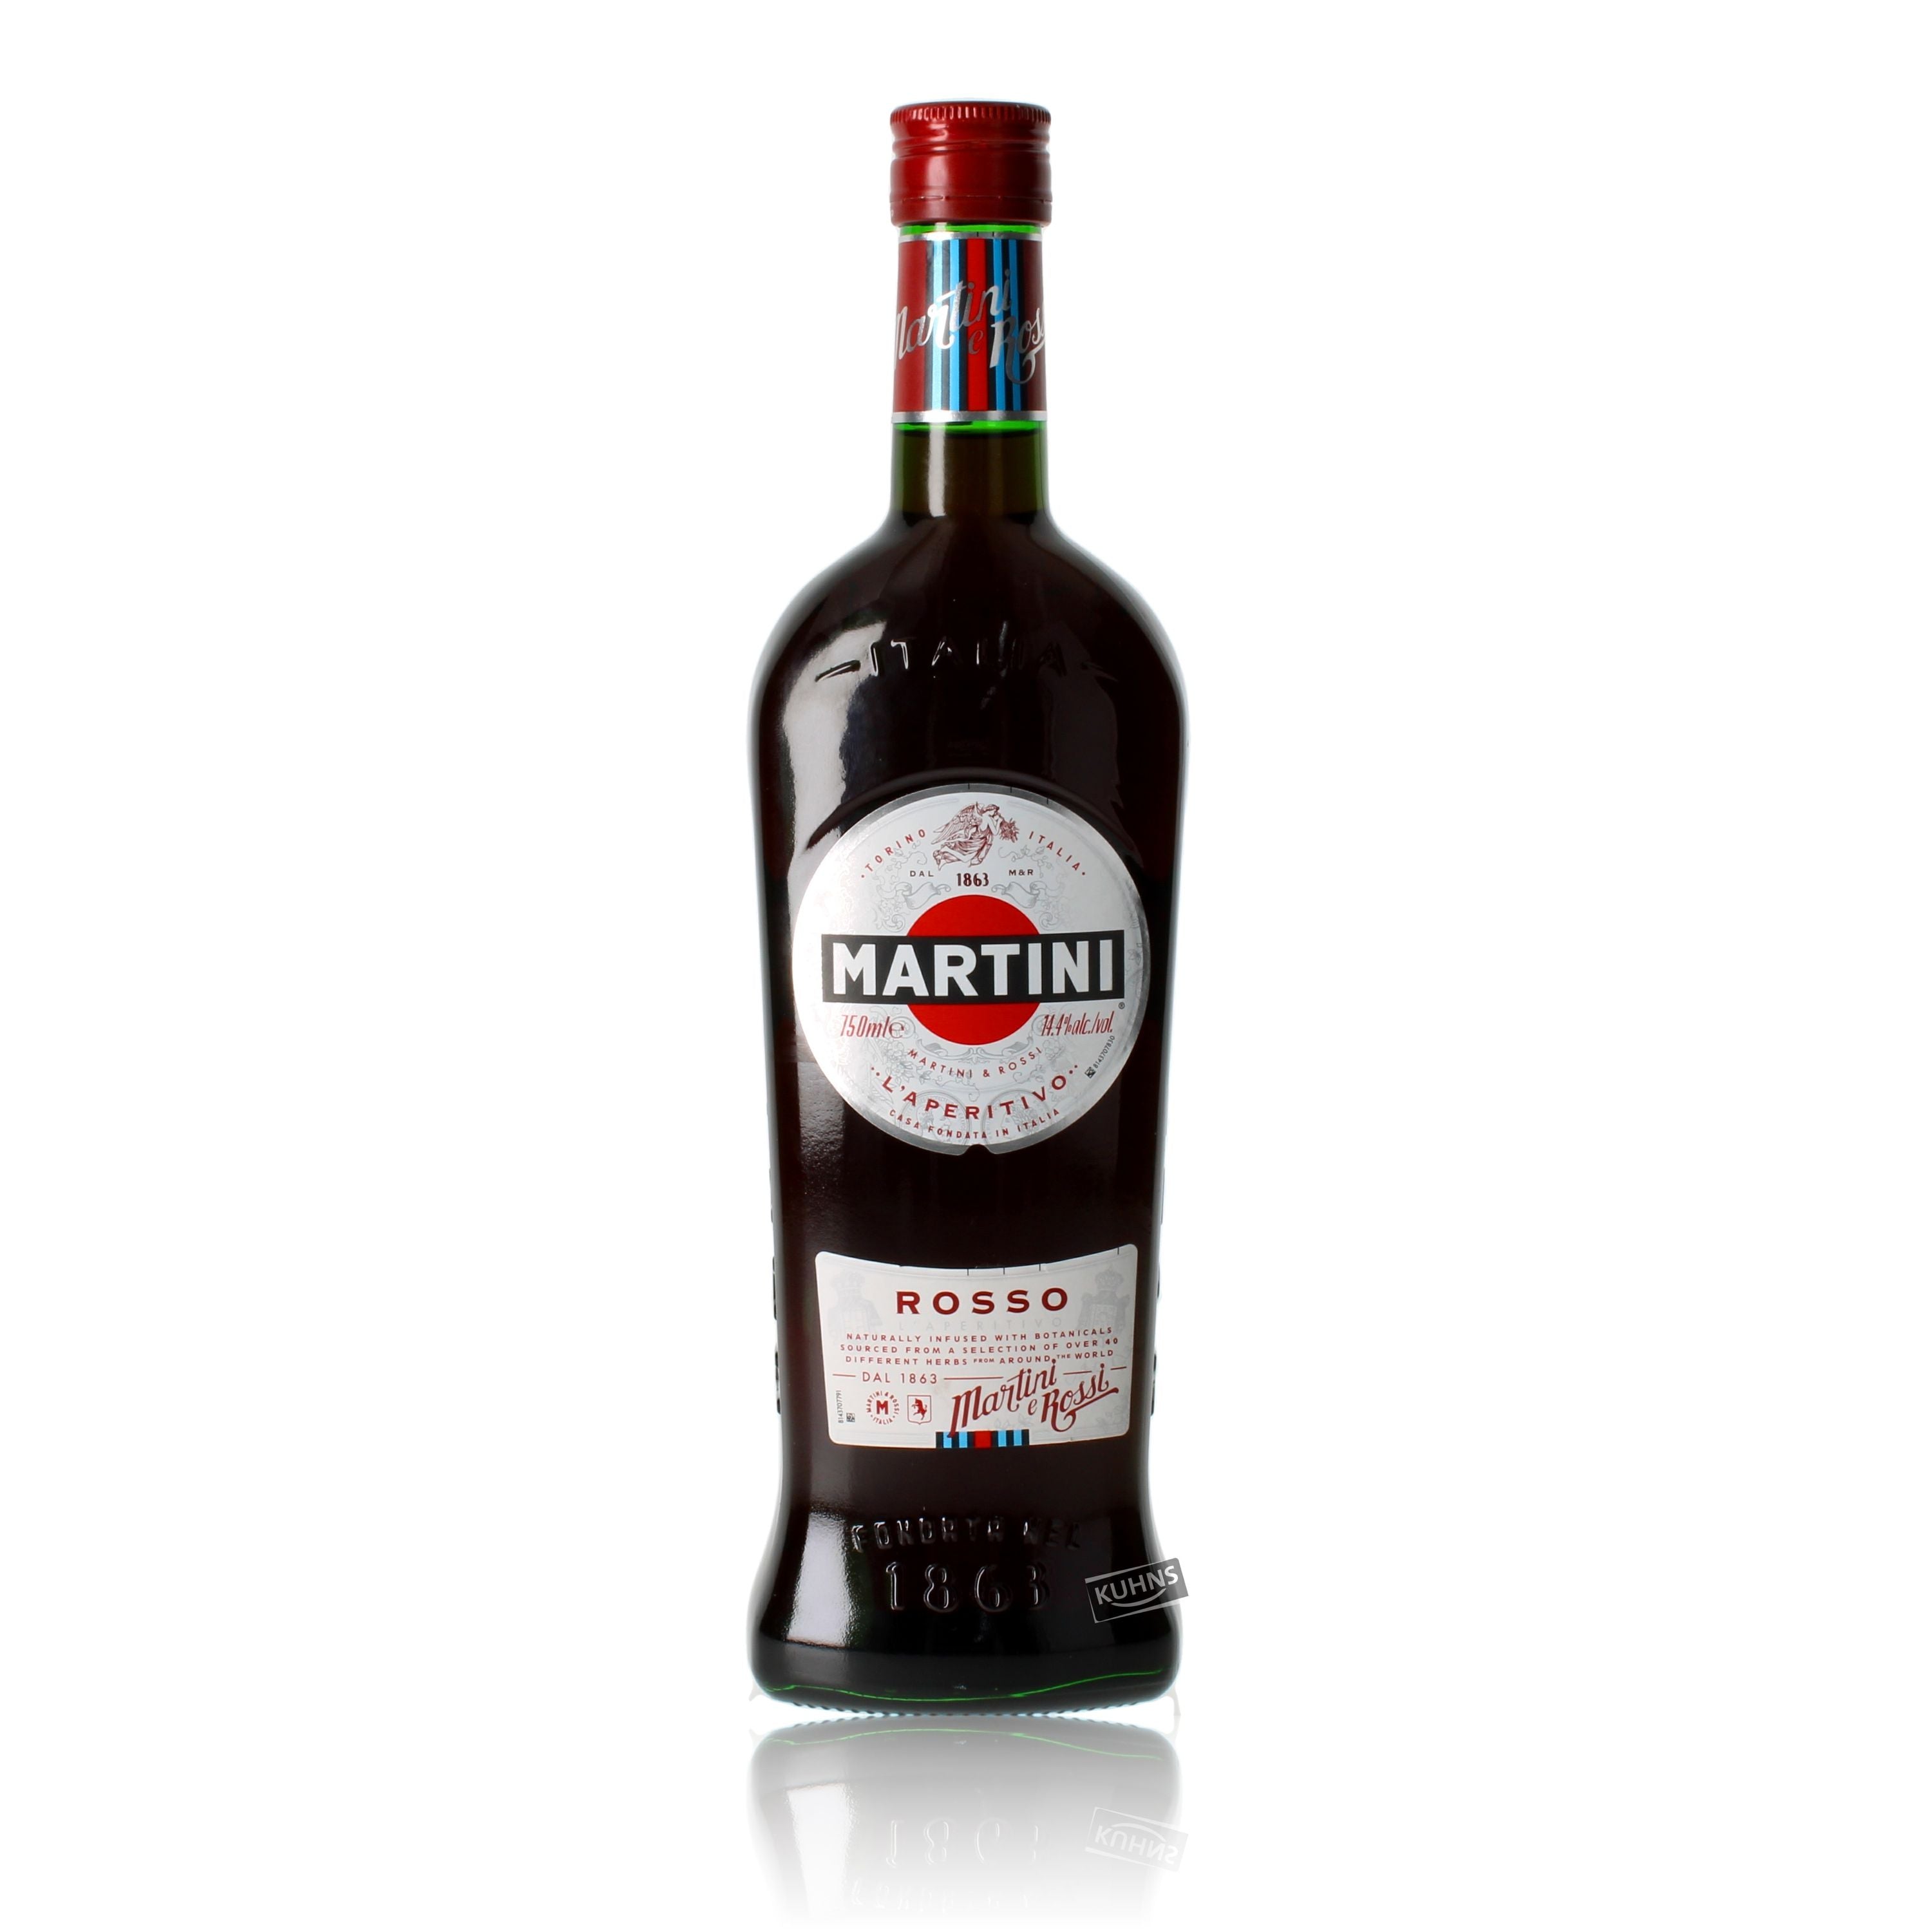 Martini Rosso 0.75l, alc. 14.4% by volume Wine-based beverage